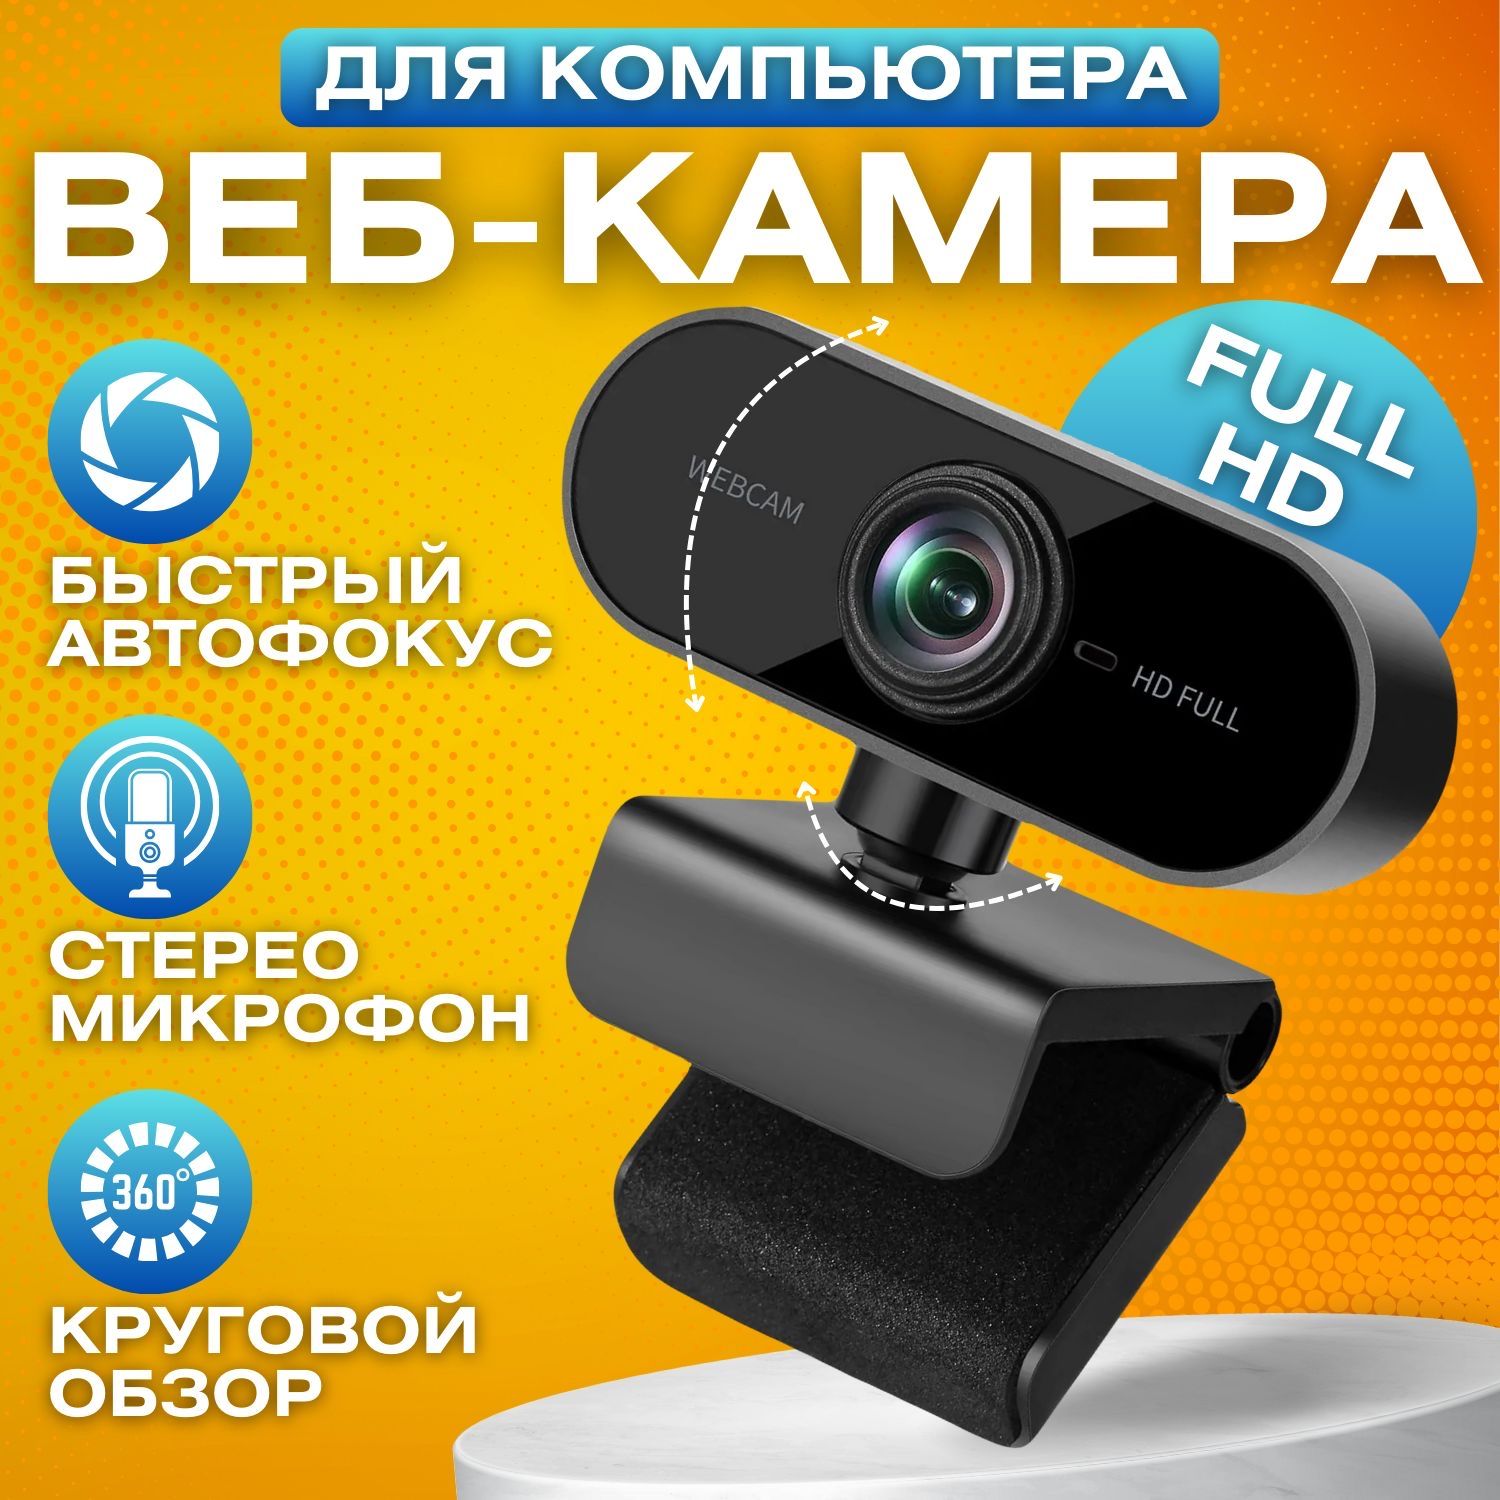 ВебкамерадляПК,Web-камерасмикрофономдлякомпьютераиноутбукасмикрофоном;FullHDUSB